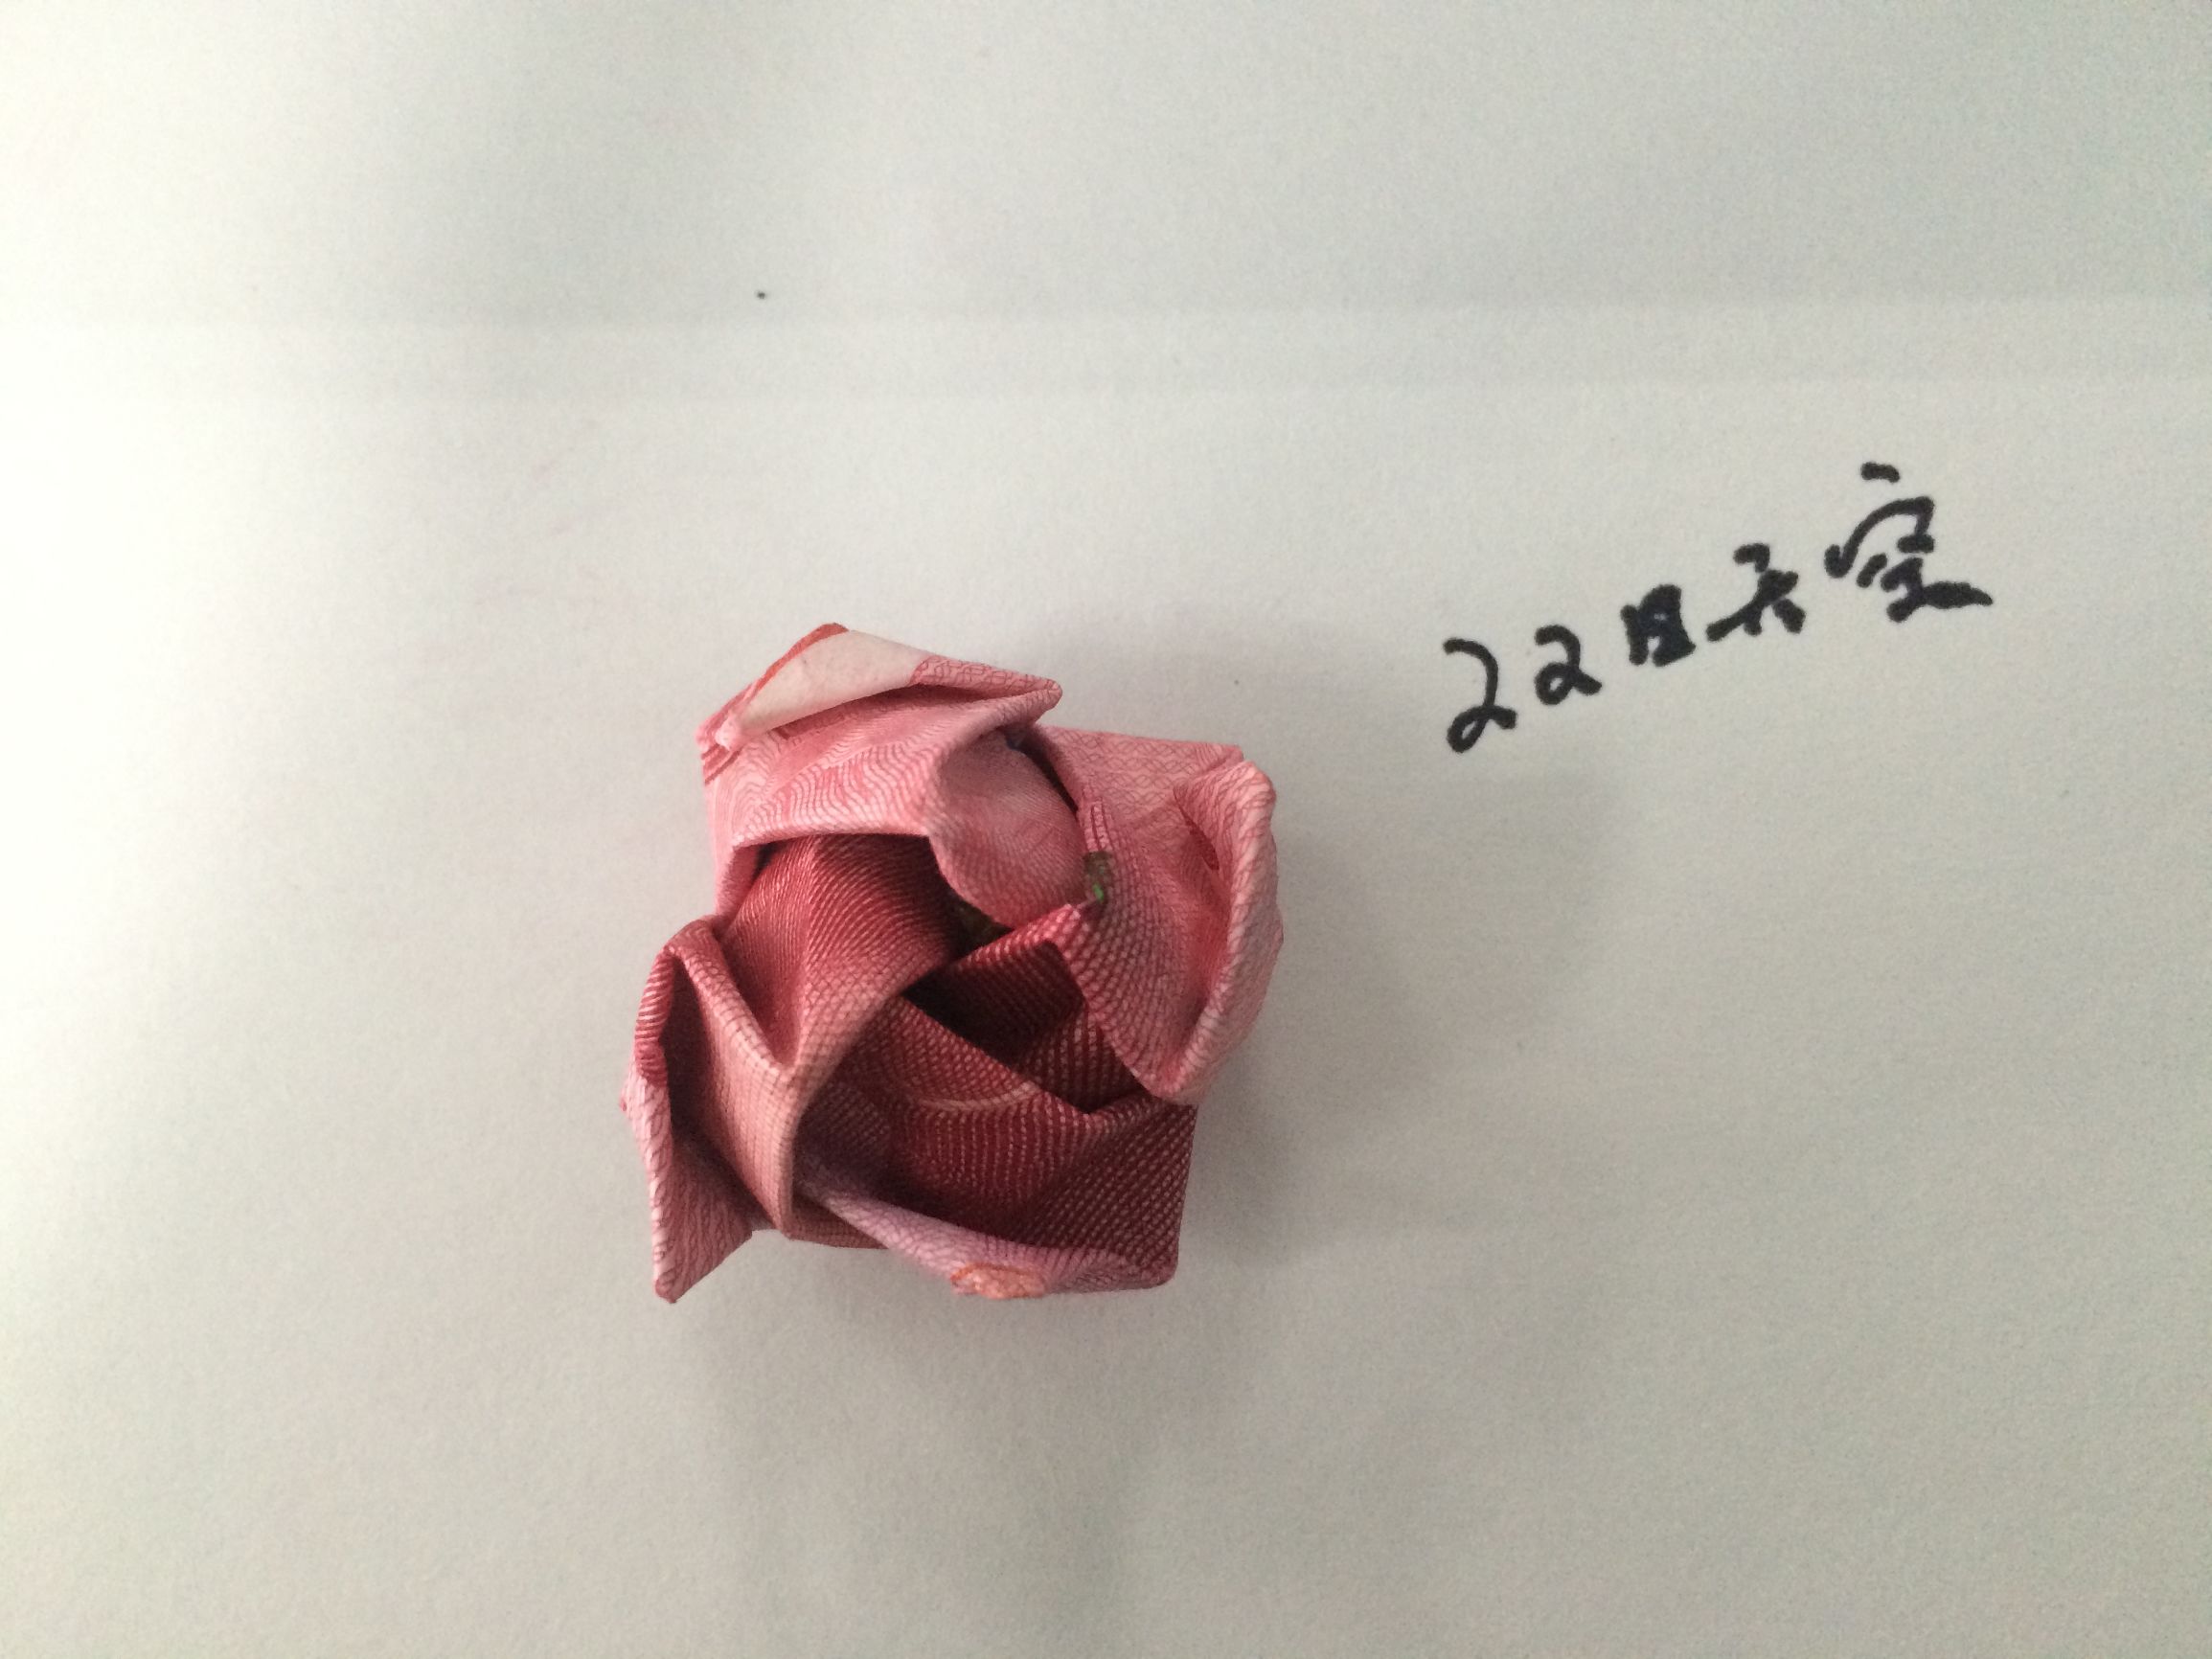 用钱折玫瑰花步骤图解100元人民币折玫瑰简单折法教程